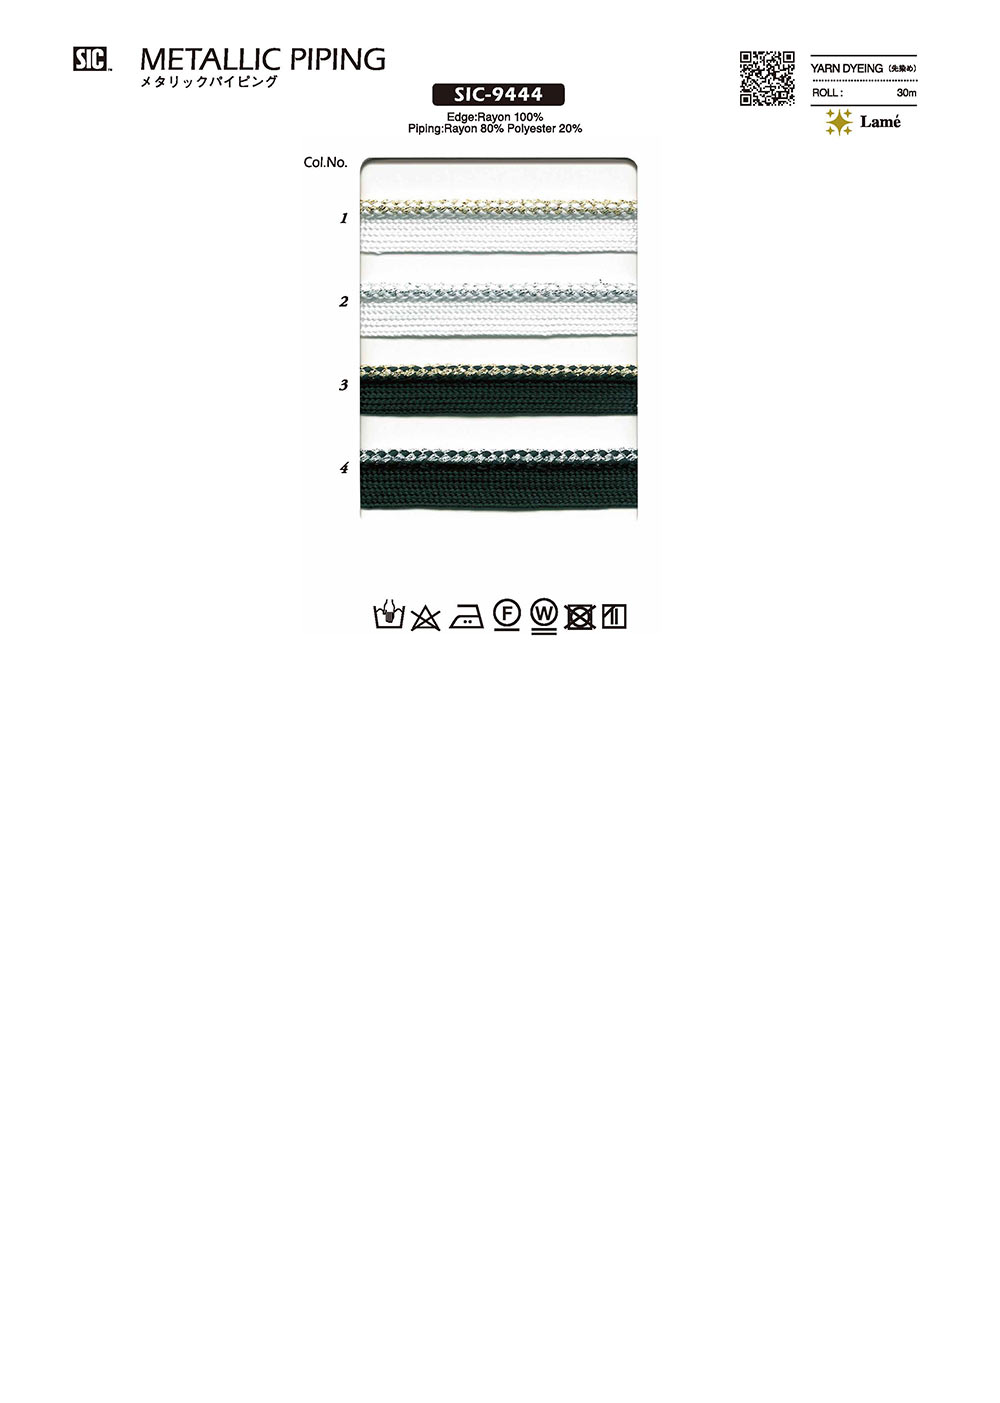 SIC-9444 Nastro Metallico Per Tubazioni[Cavo A Nastro] SHINDO(SIC)